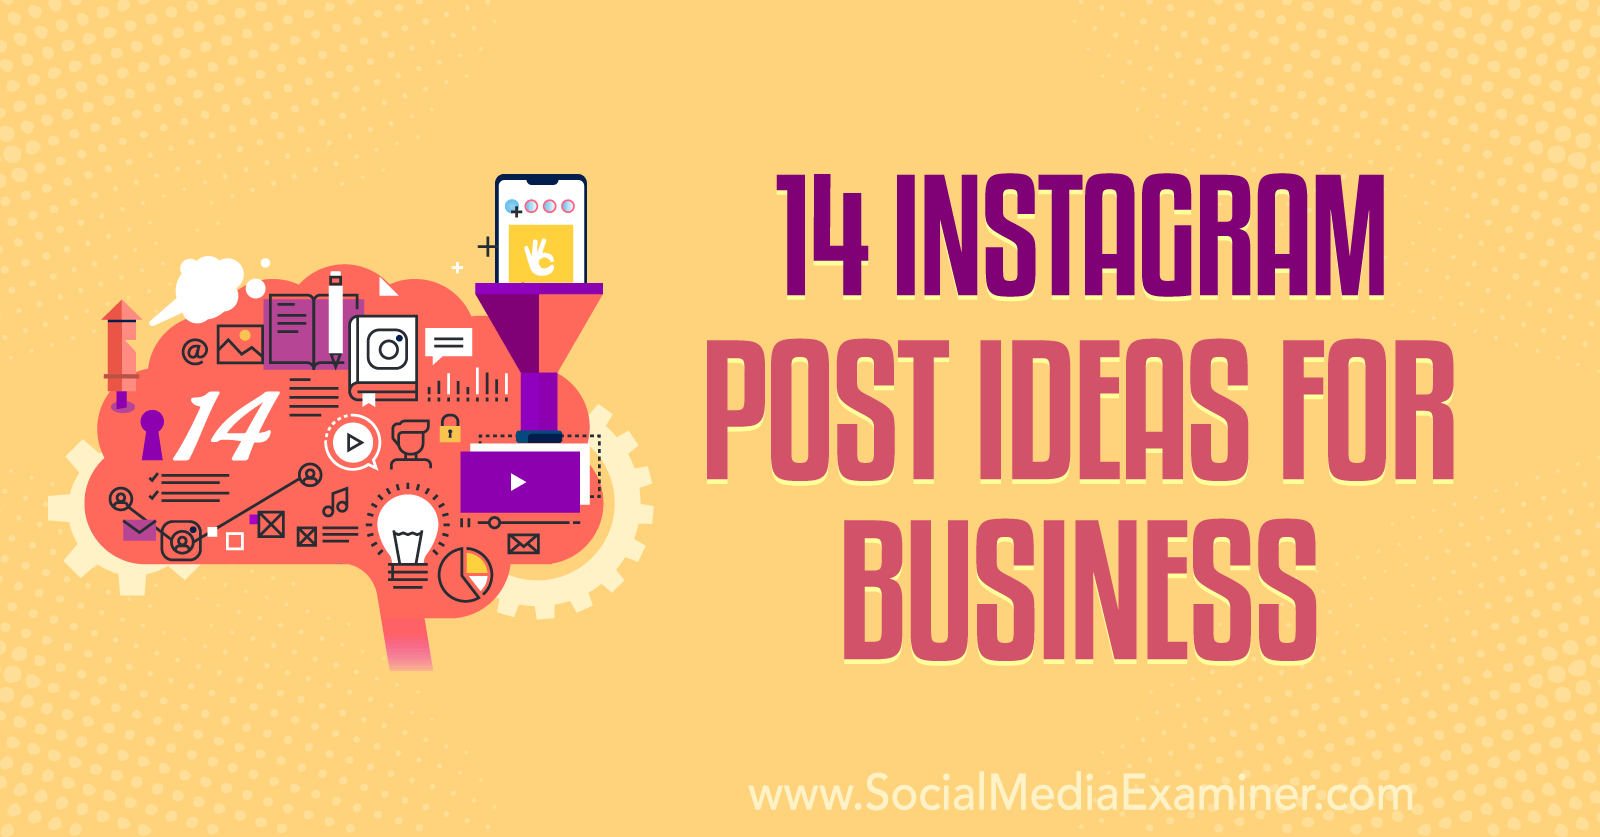 14 Instagram Post Ideas for Business : Social Media Examiner